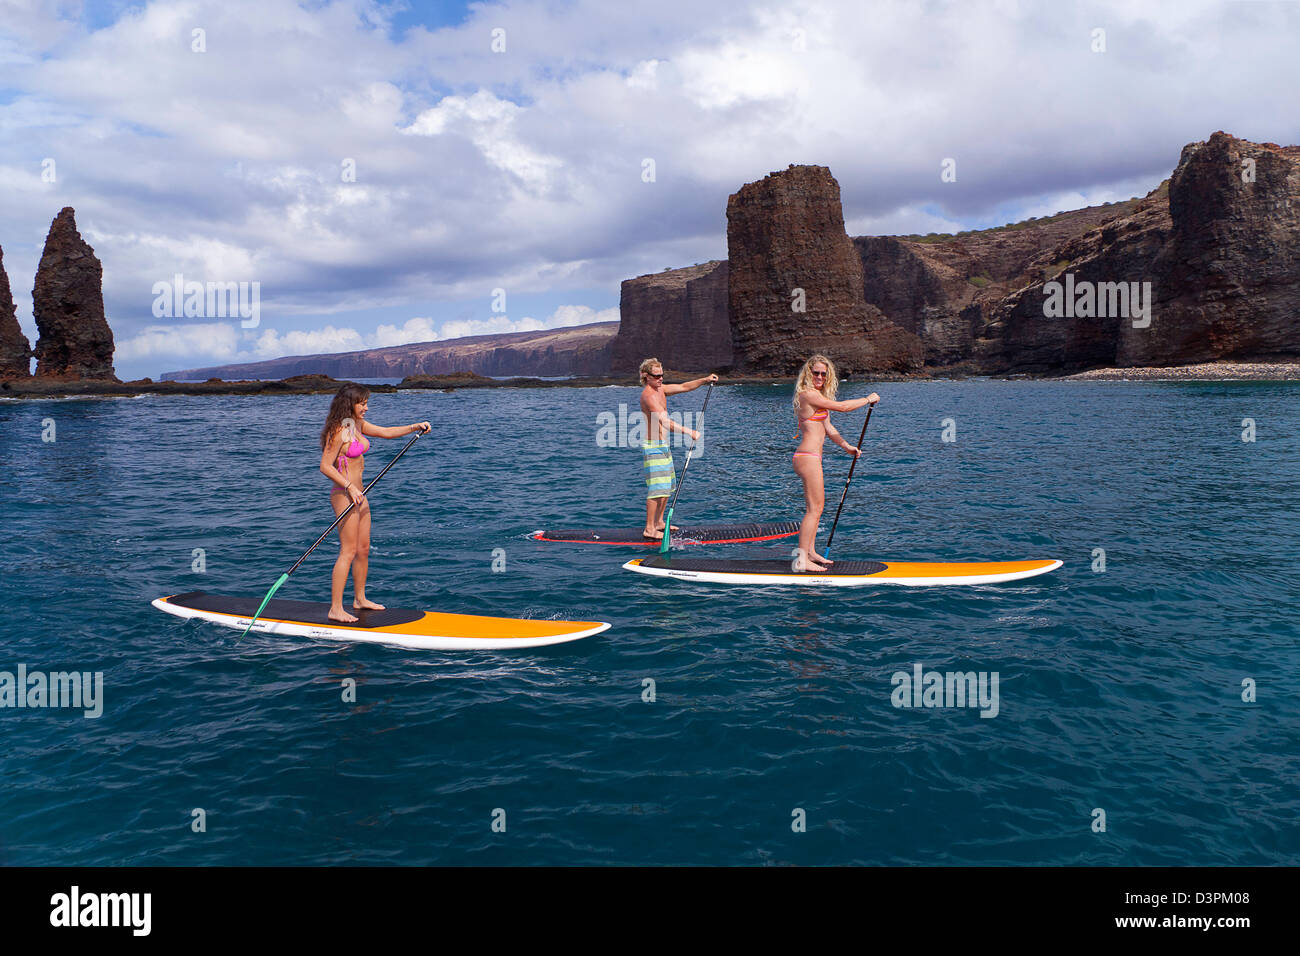 Drei Jugendliche auf Stand-up-Paddle-Boards an Nadeln einmal die Insel Lanai, Hawaii. Alle drei sind Modell veröffentlicht. Stockfoto